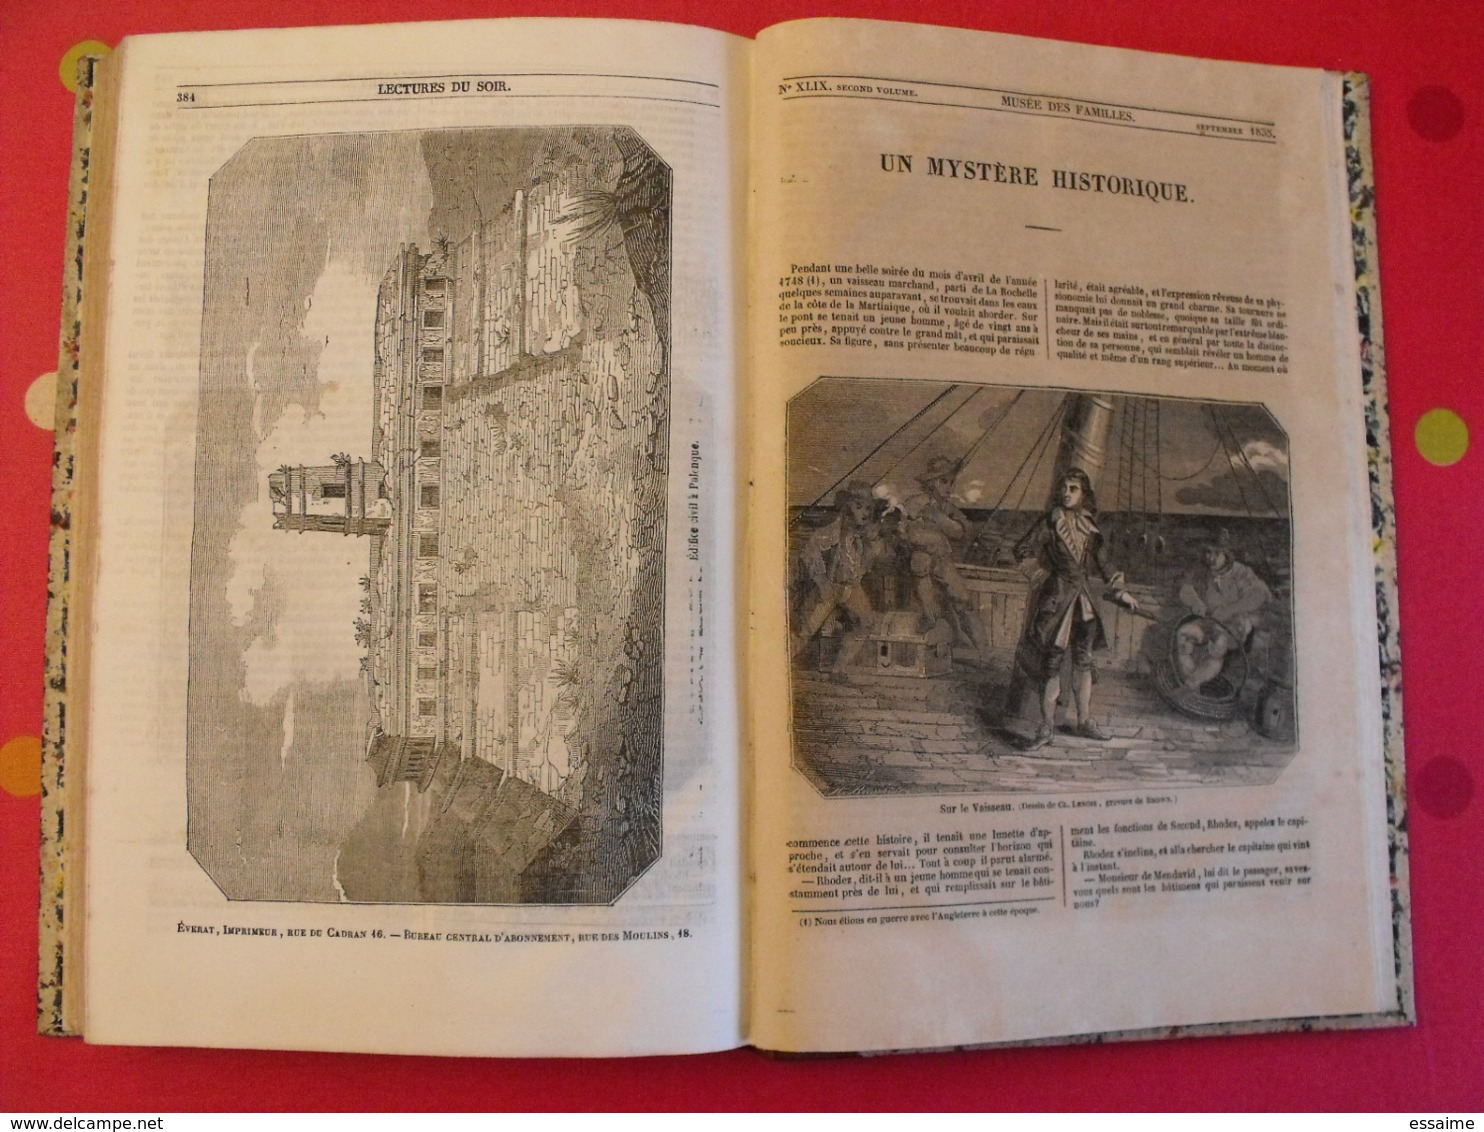 musée des familles 1834-1835. recueil annuel. second volume. 412 pages.indiens foix melk catacombes supplices boa pompei